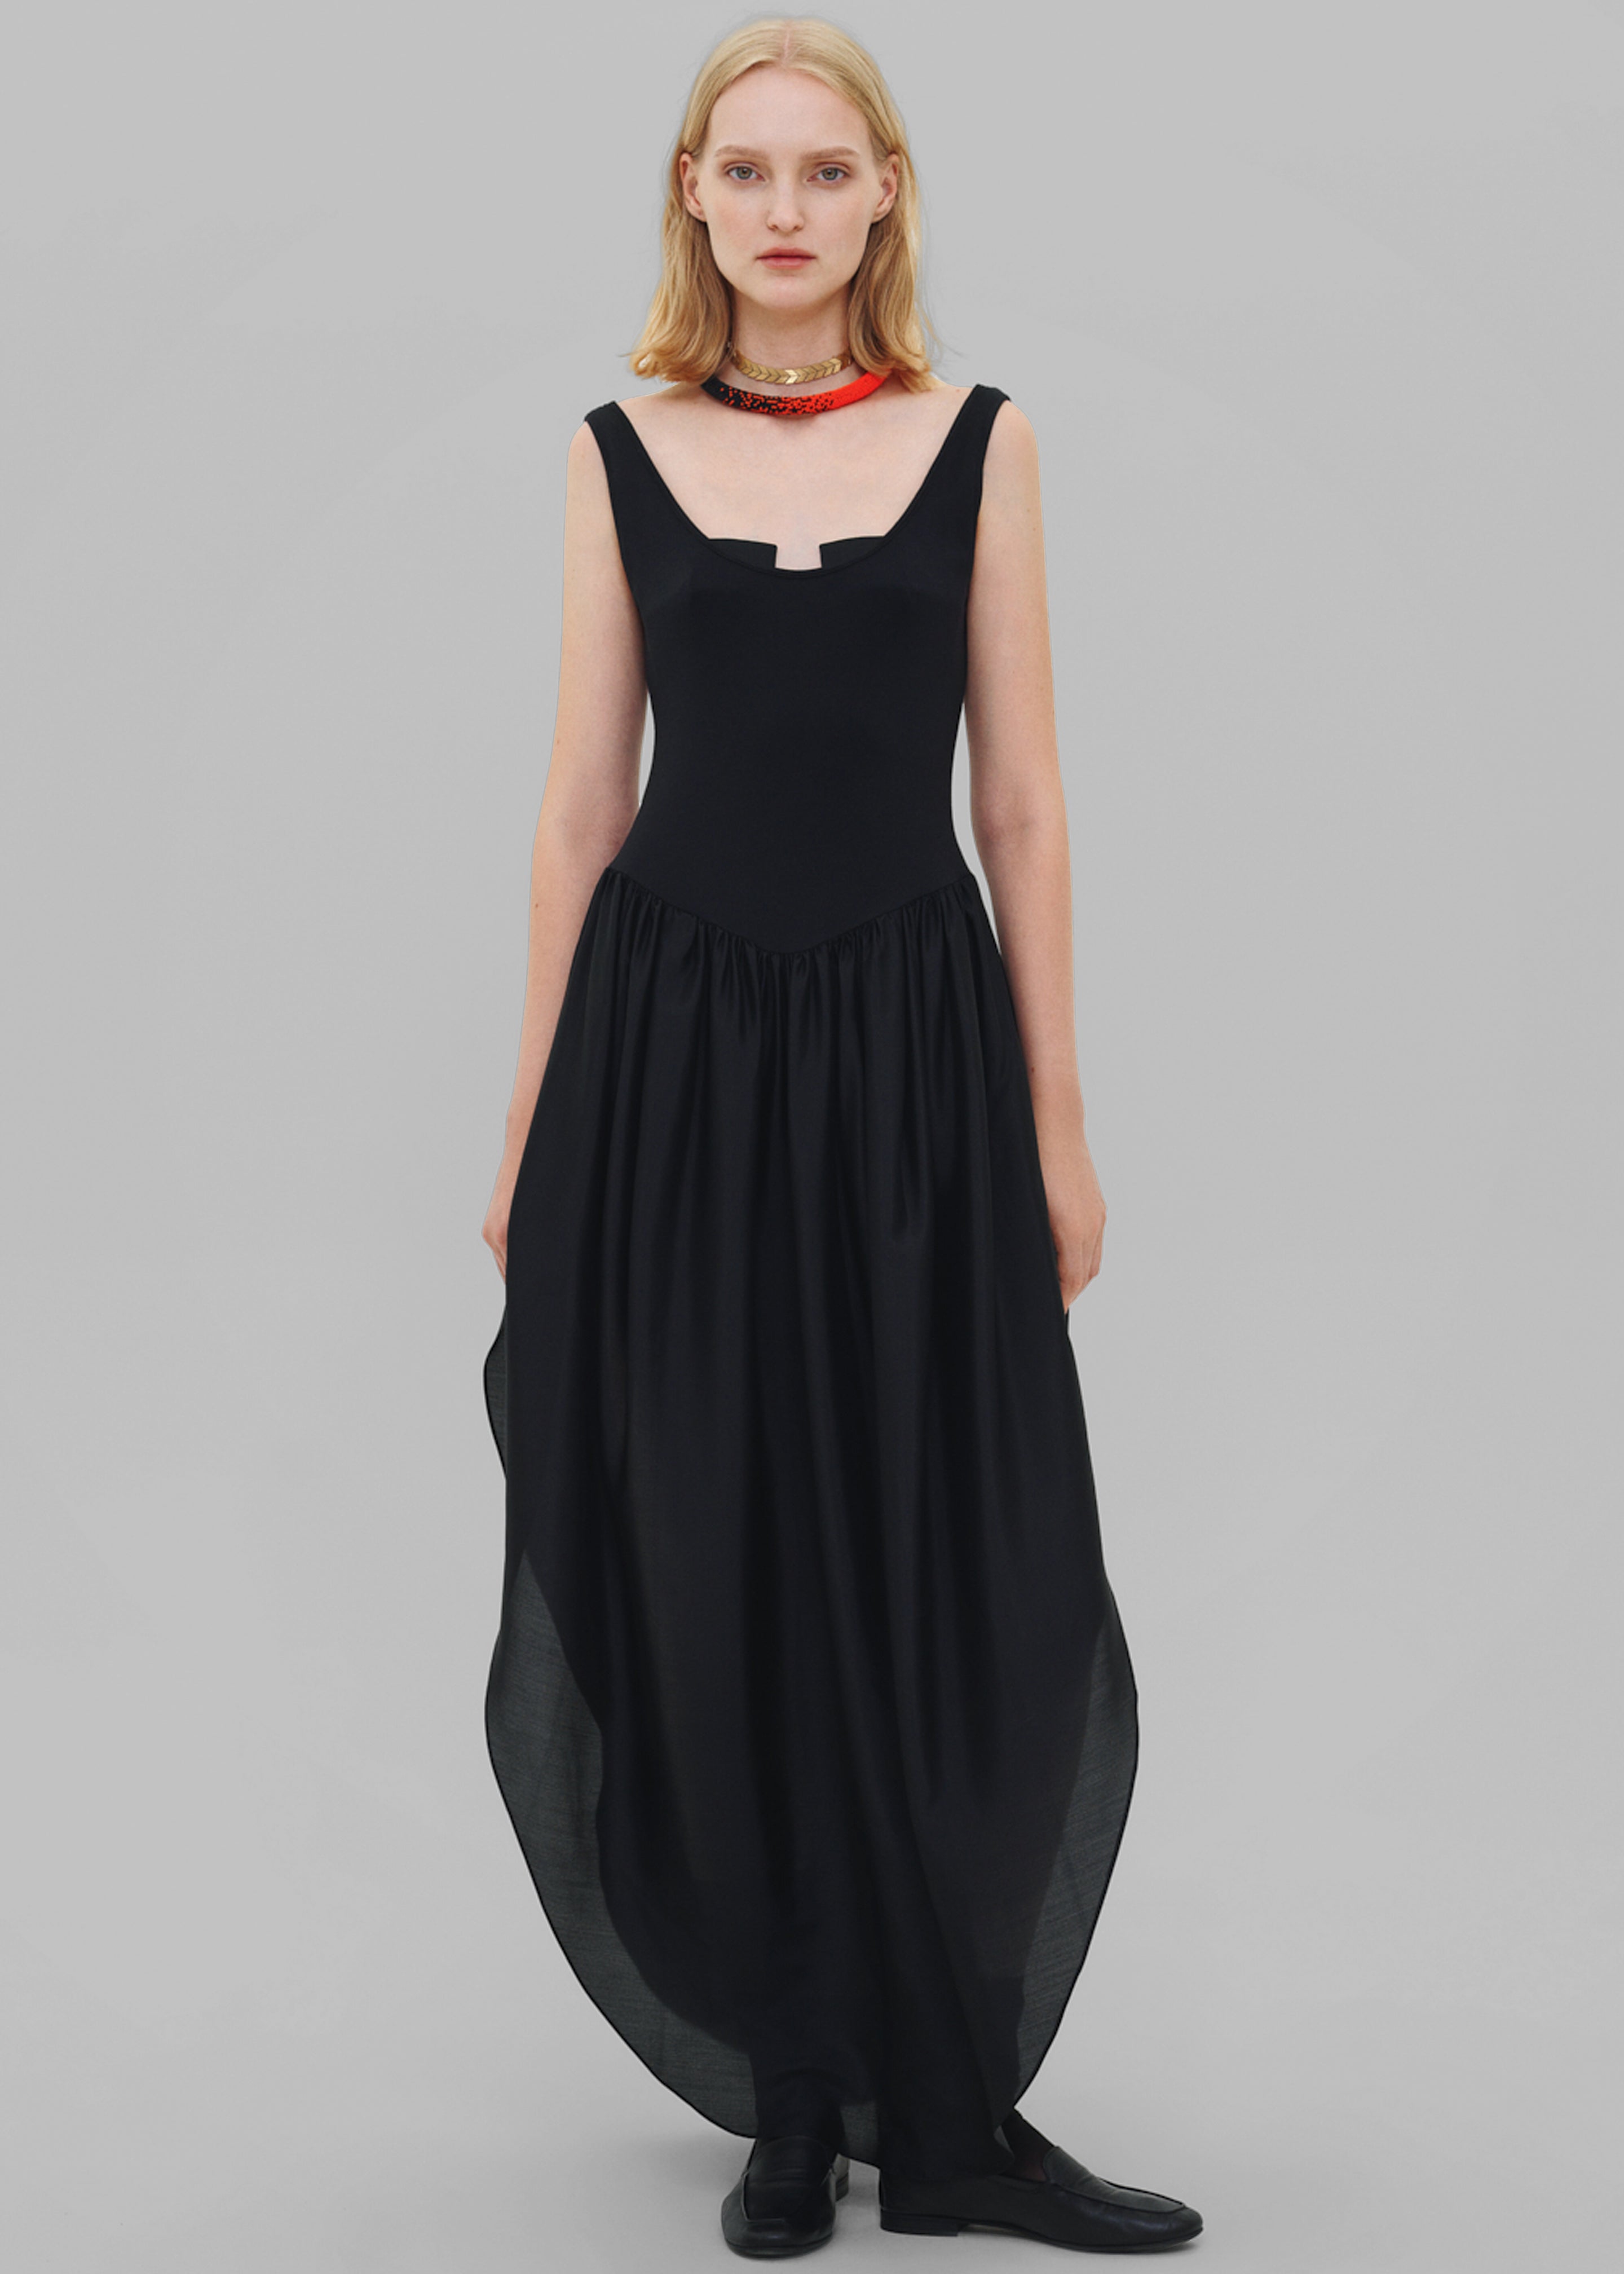 Bevza Tulip Dress - Black - 1